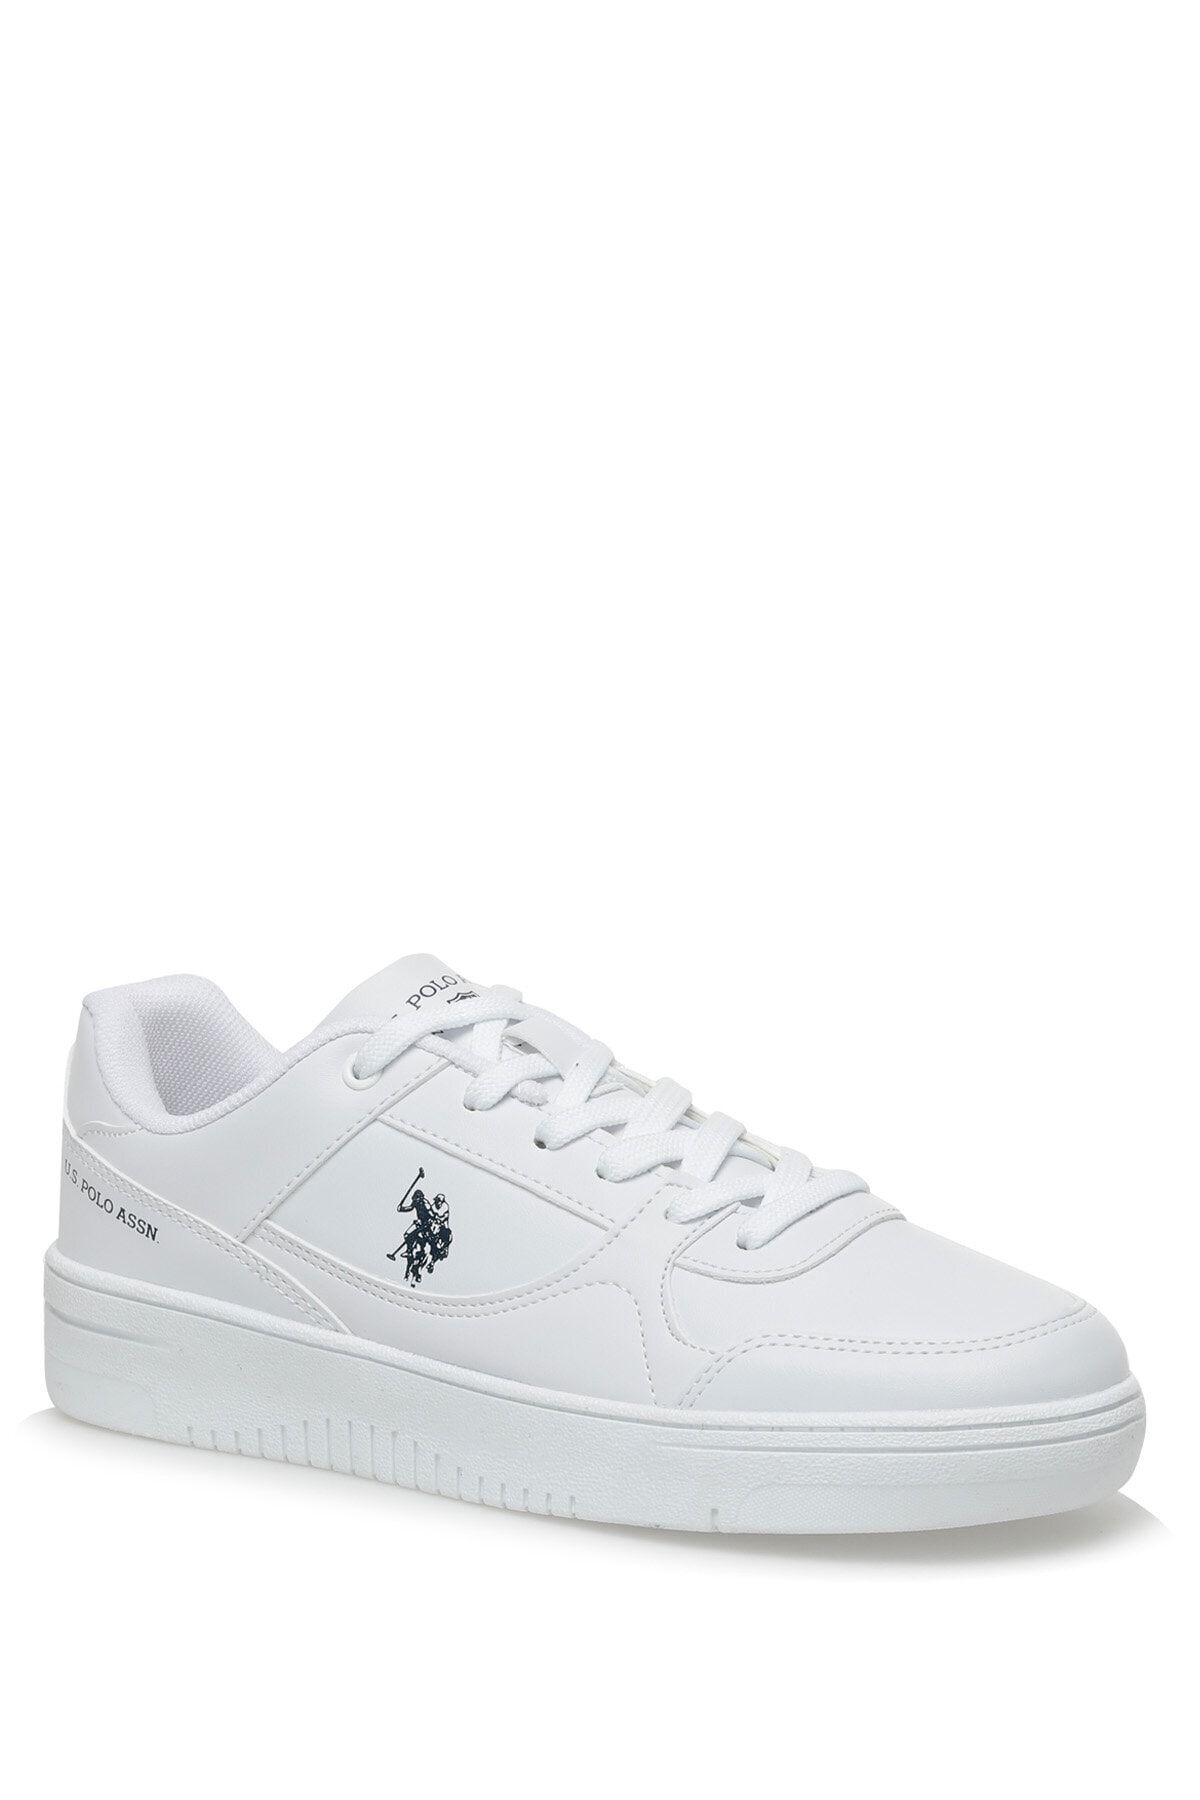 U.S. Polo Assn. Lee 3fx Beyaz Erkek Sneaker